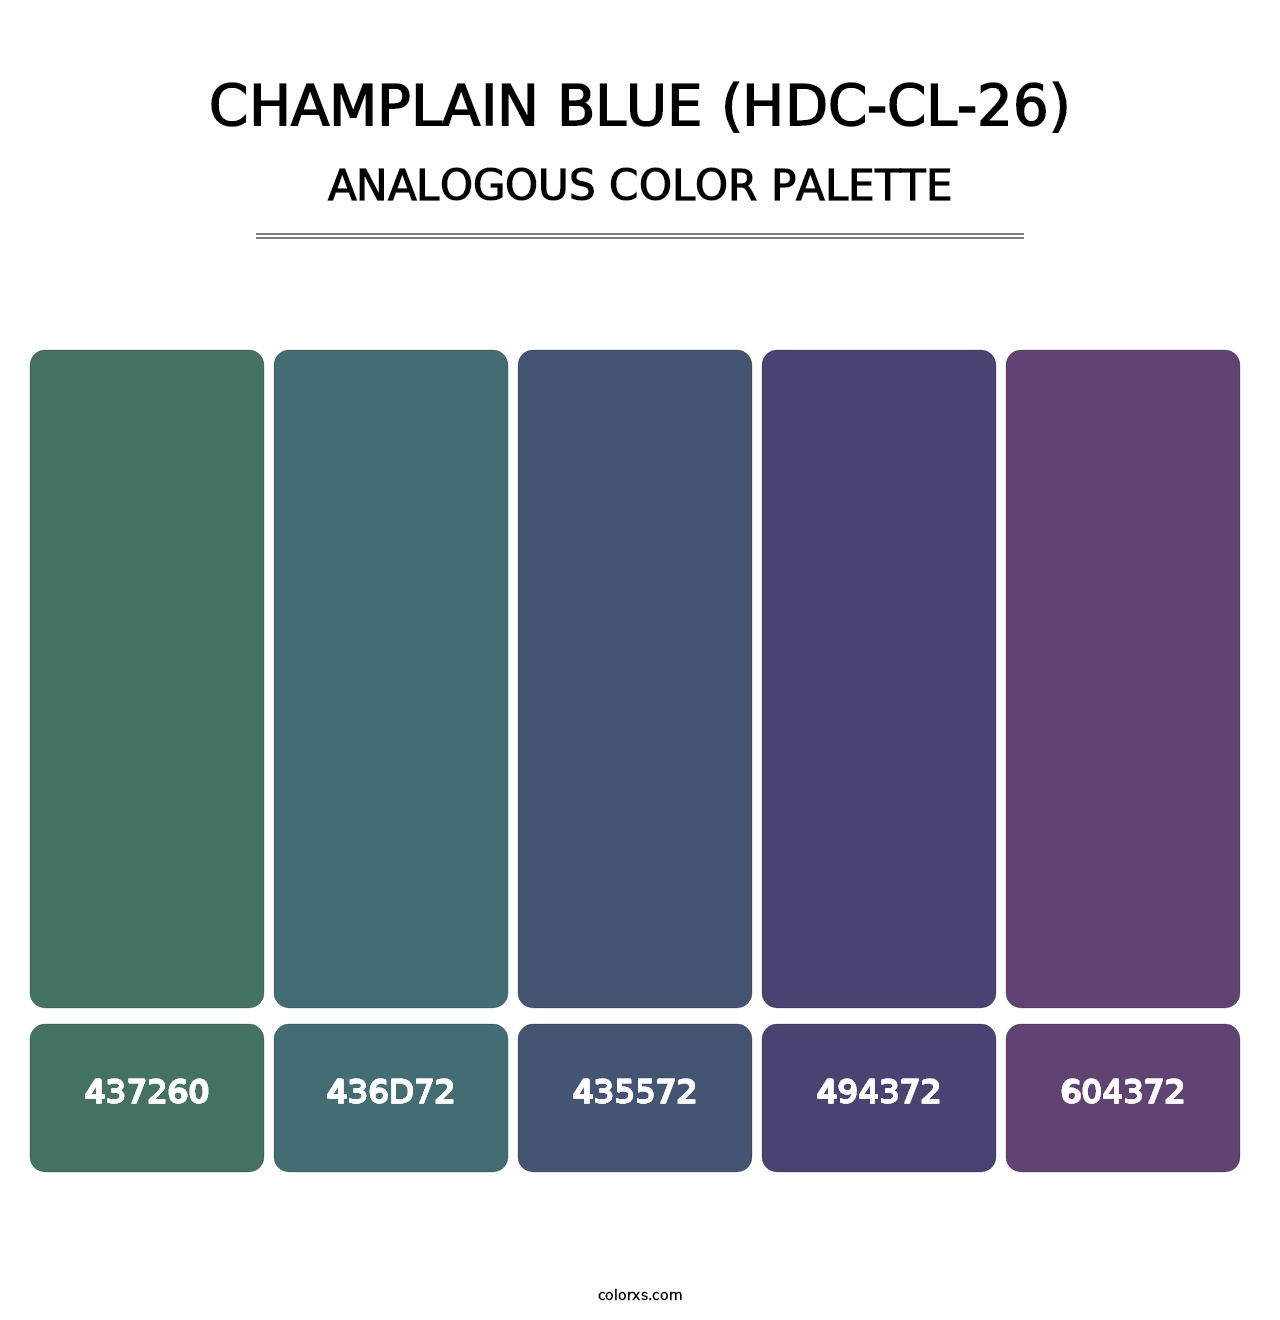 Champlain Blue (HDC-CL-26) - Analogous Color Palette